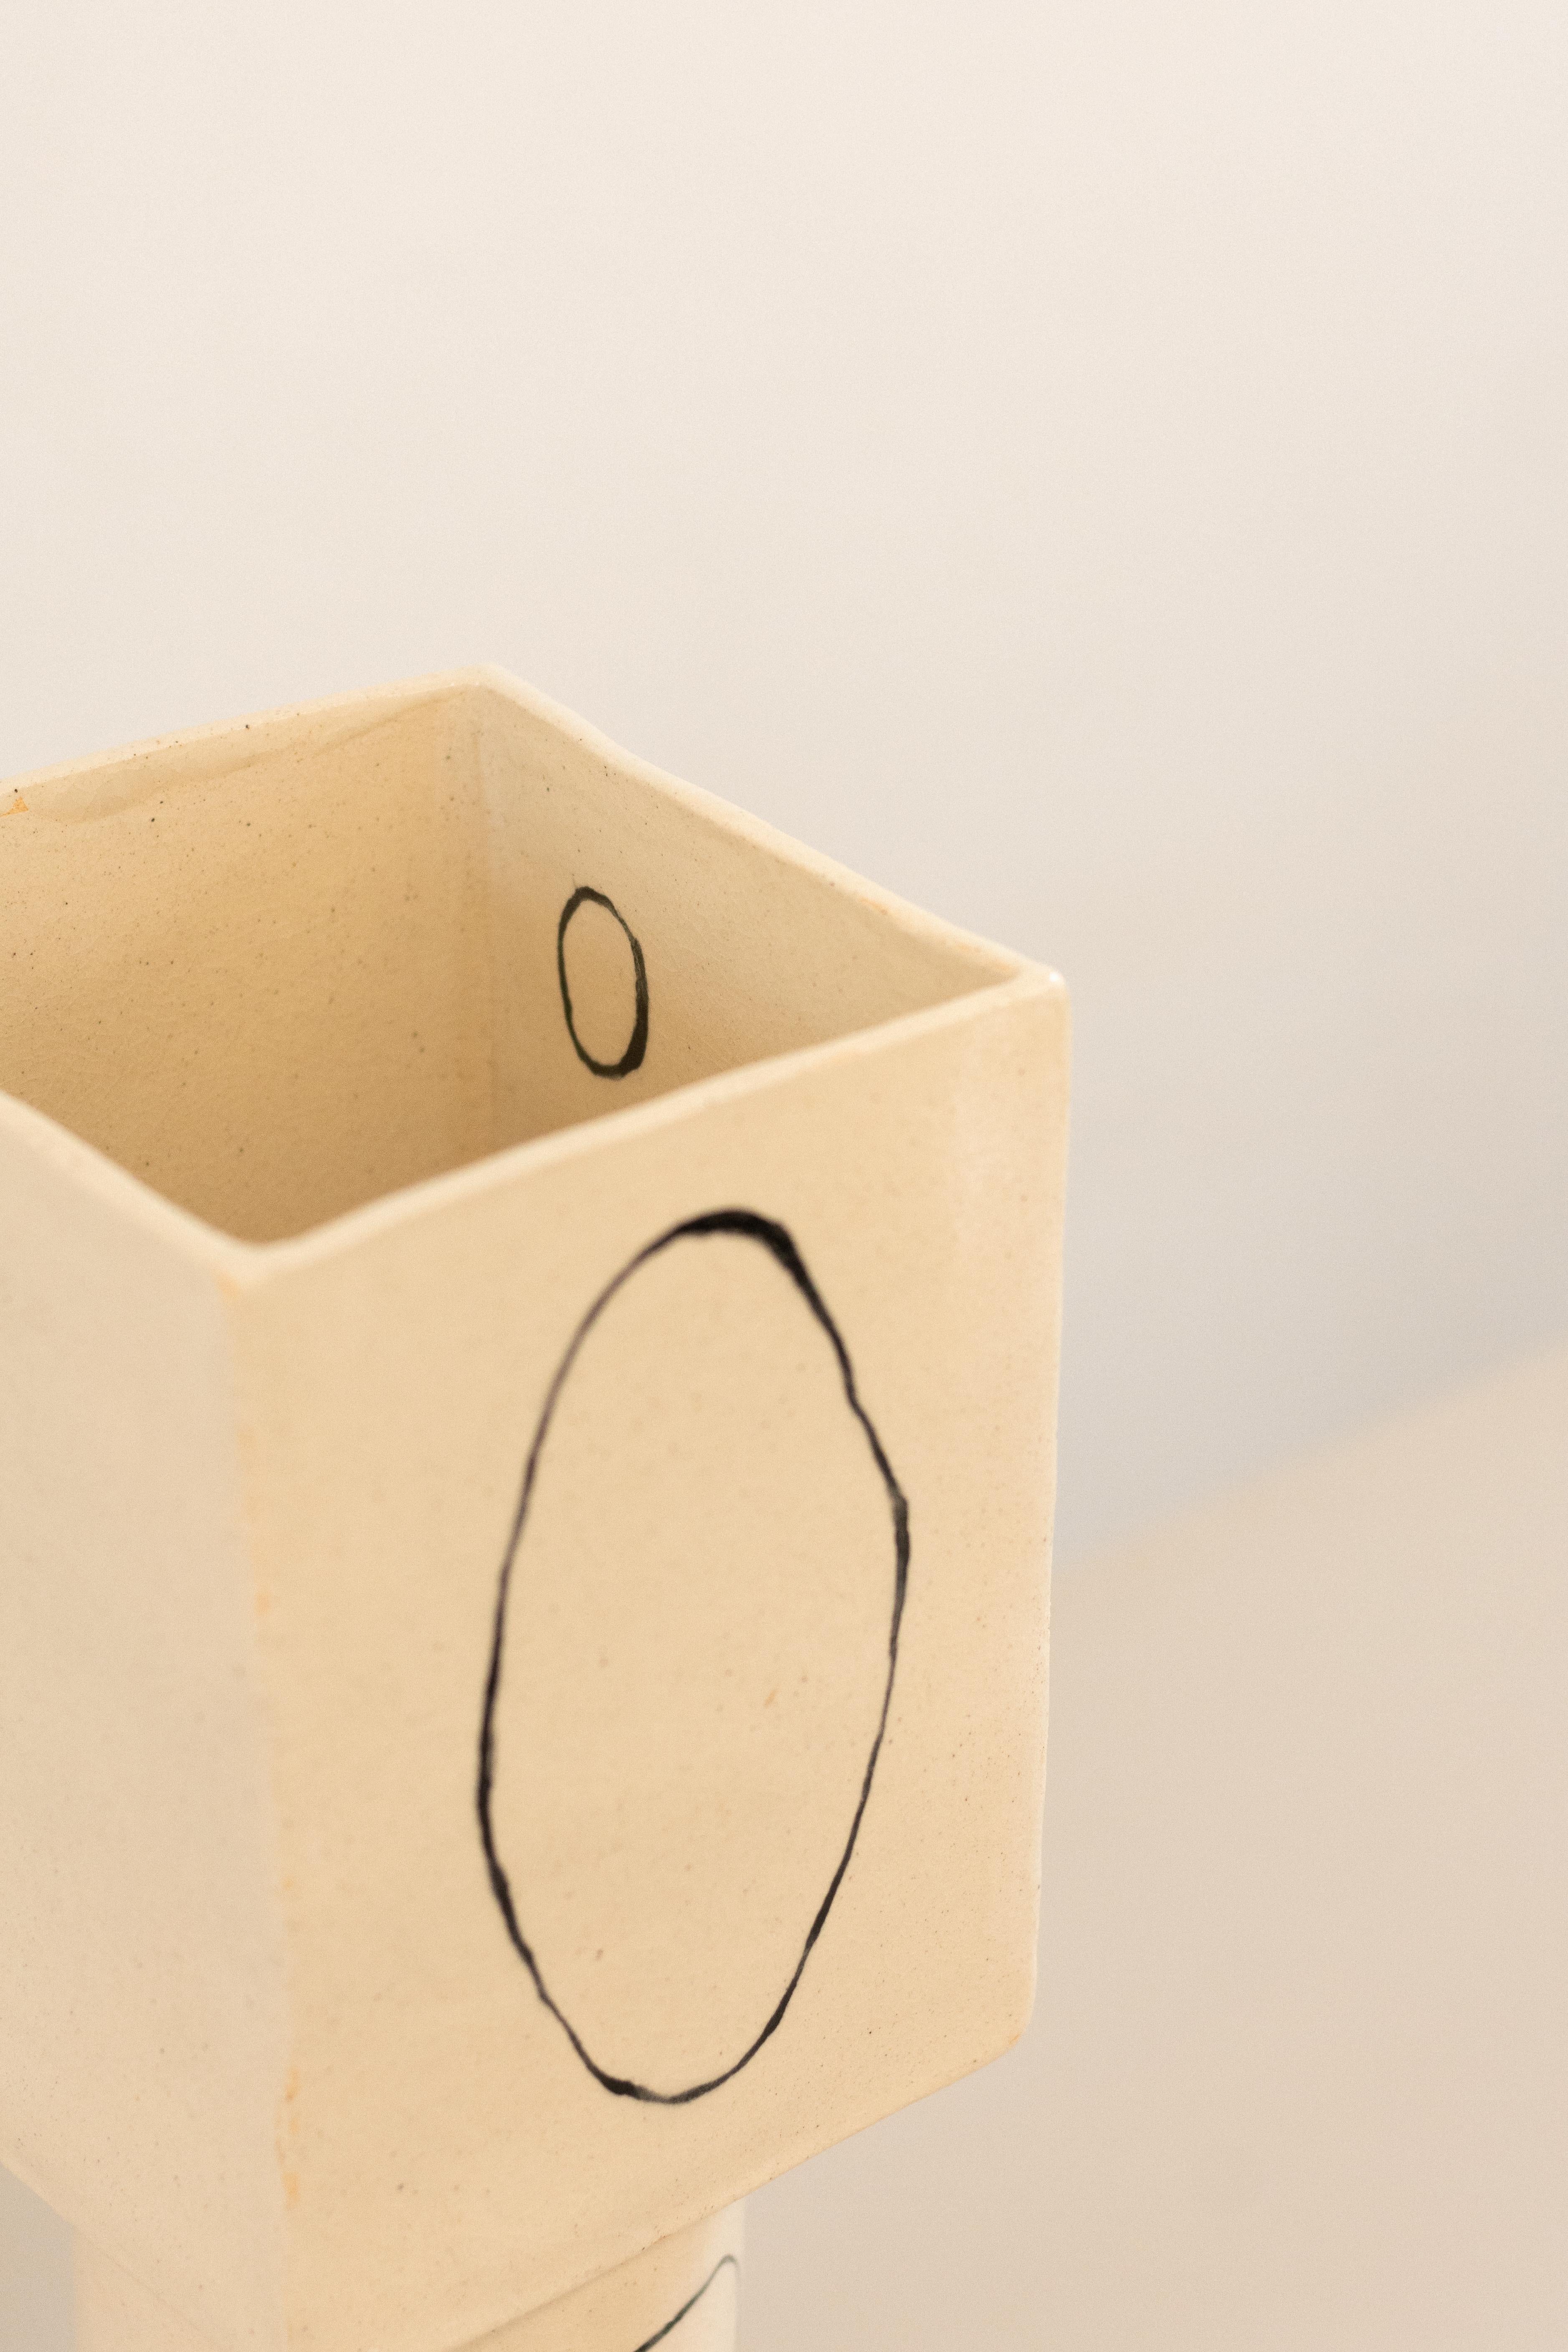 contemporary white ceramic vase inspired in Miró - ZERO serie - obj01, brazil  For Sale 1